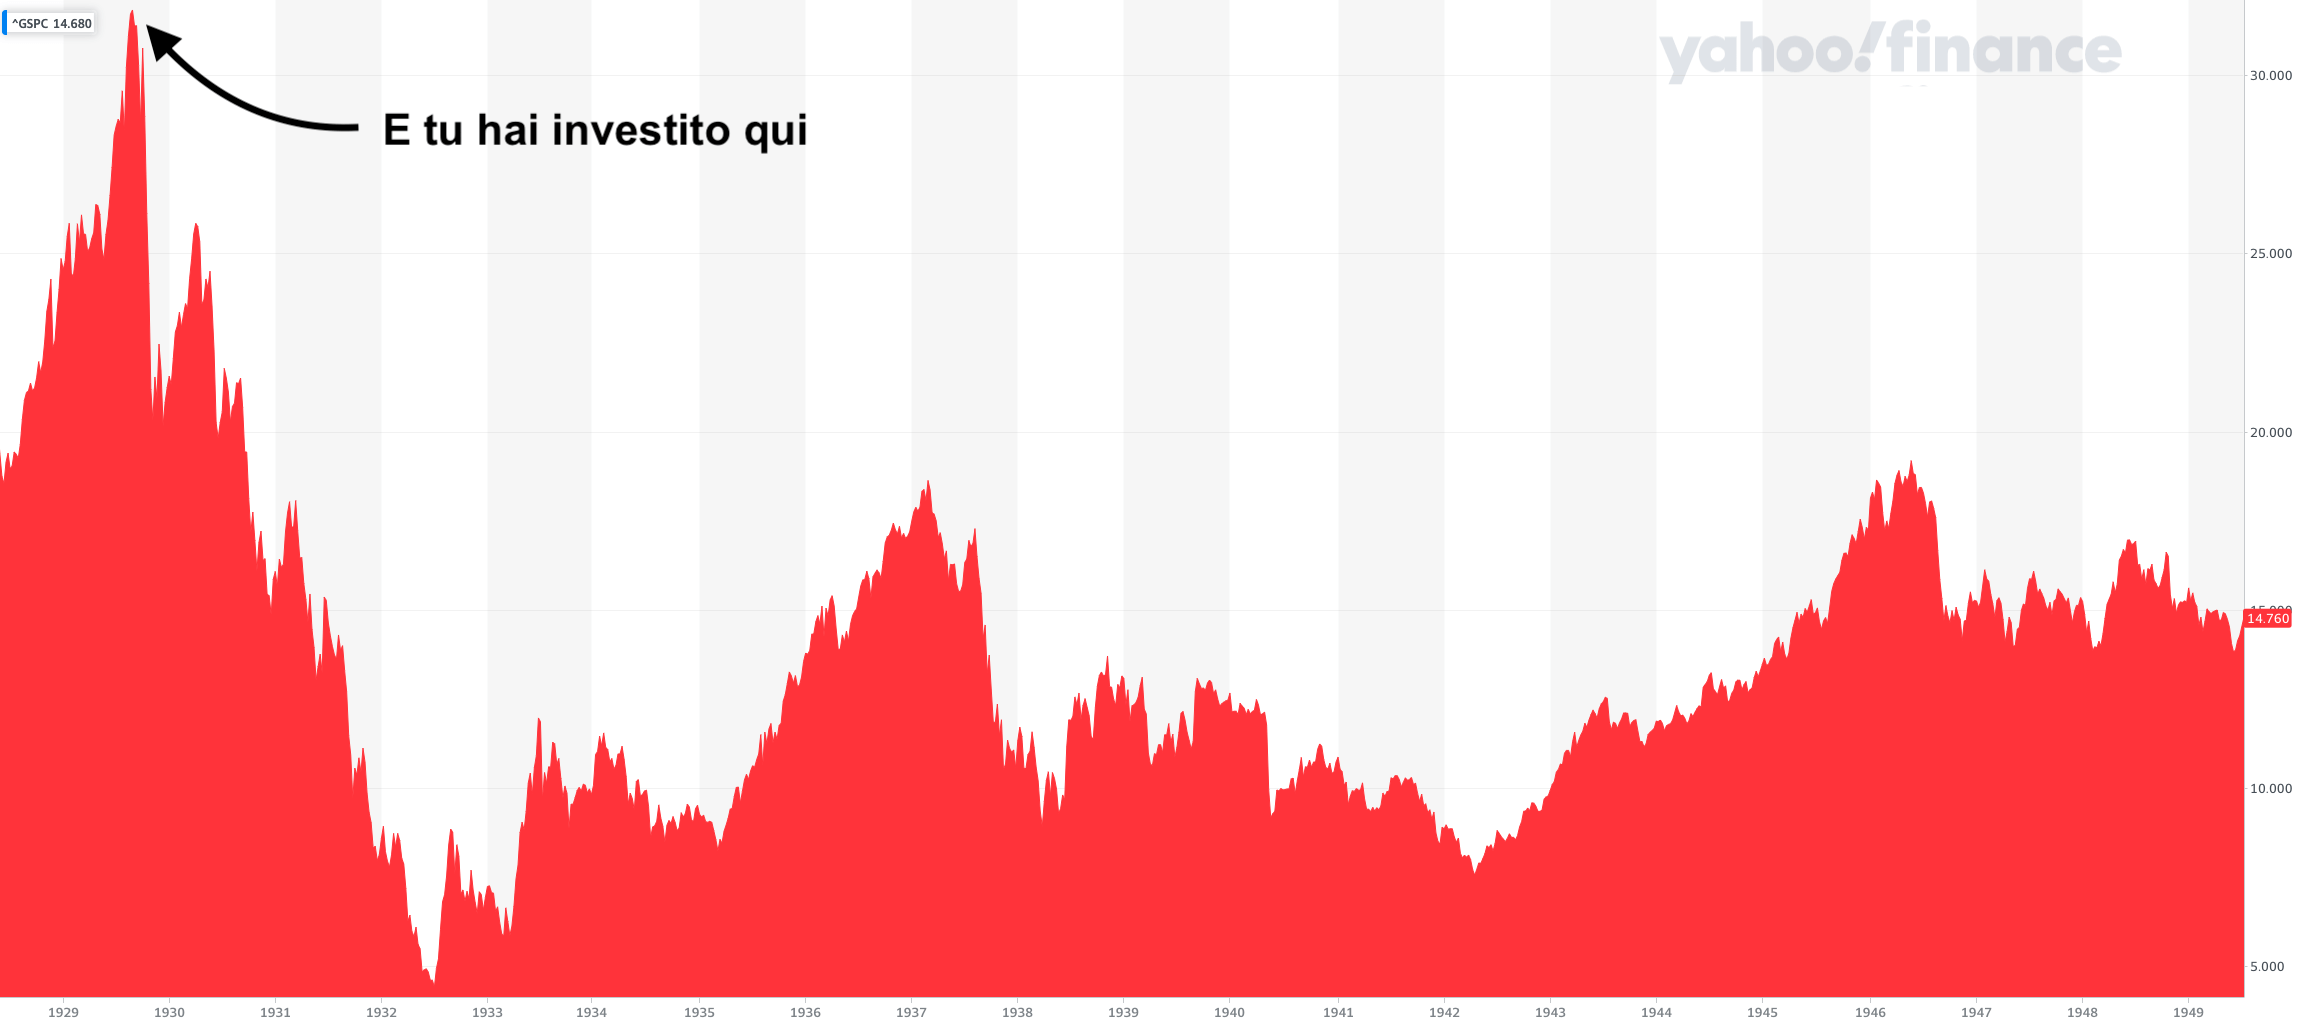 Buon investimento - grafico sp500 dal 1929